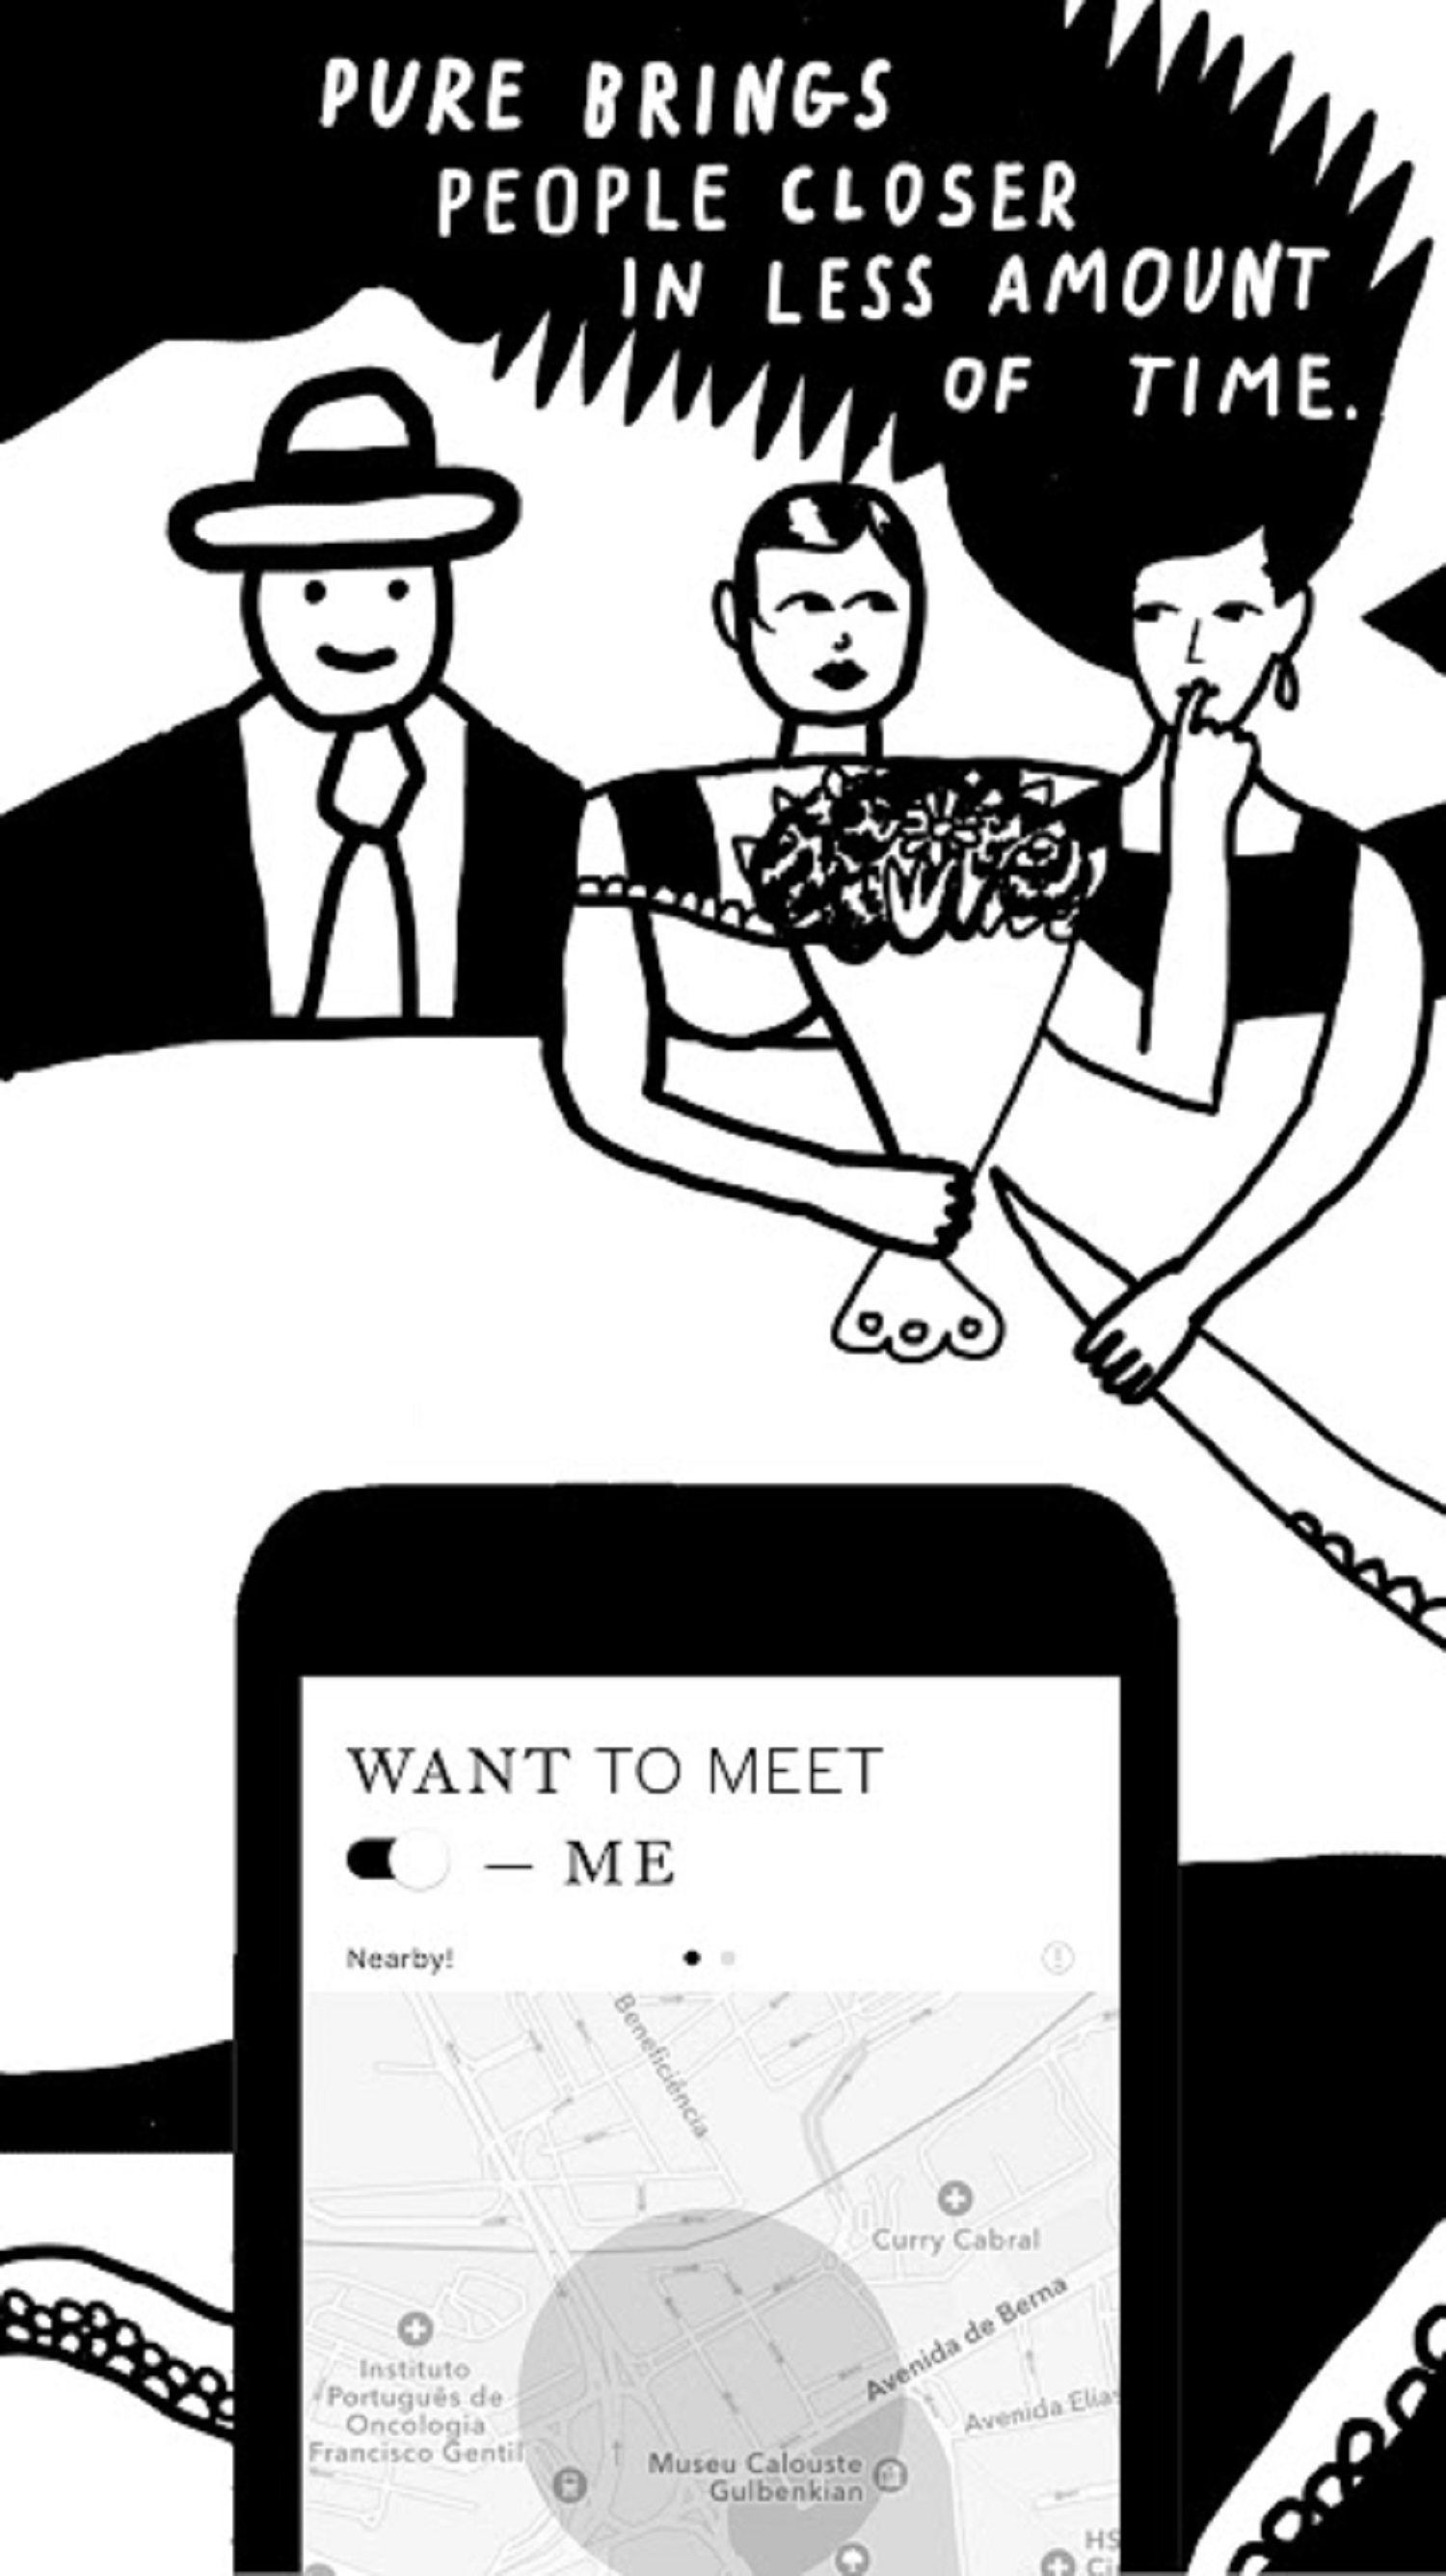 Is the app dating com legit?